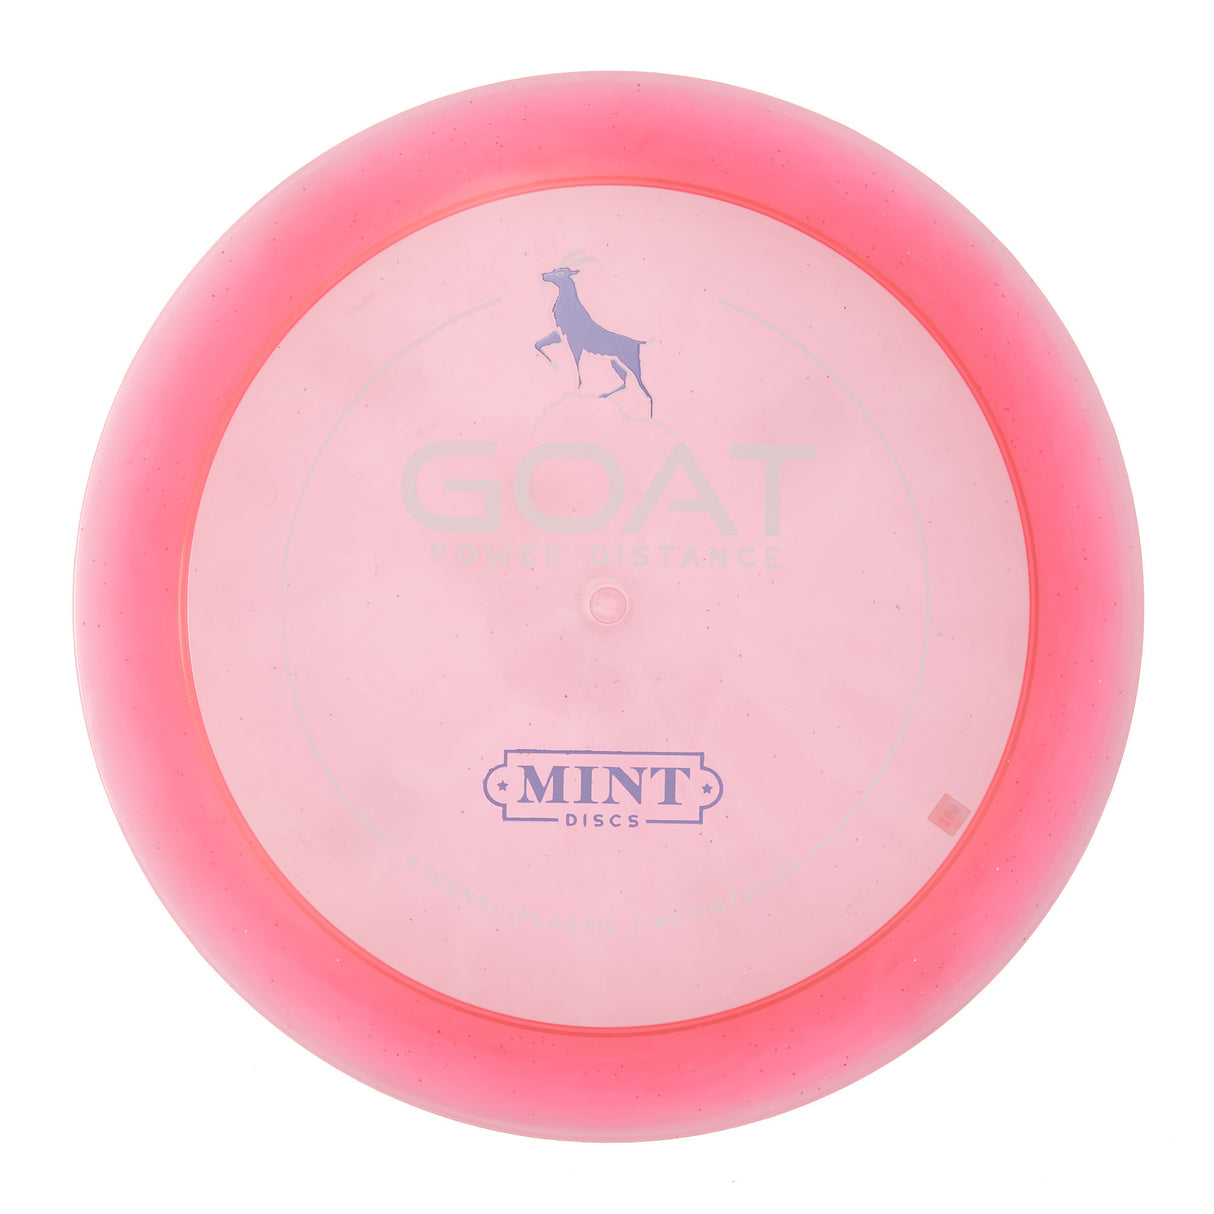 Mint Discs Goat - Eternal 170g | Style 0008